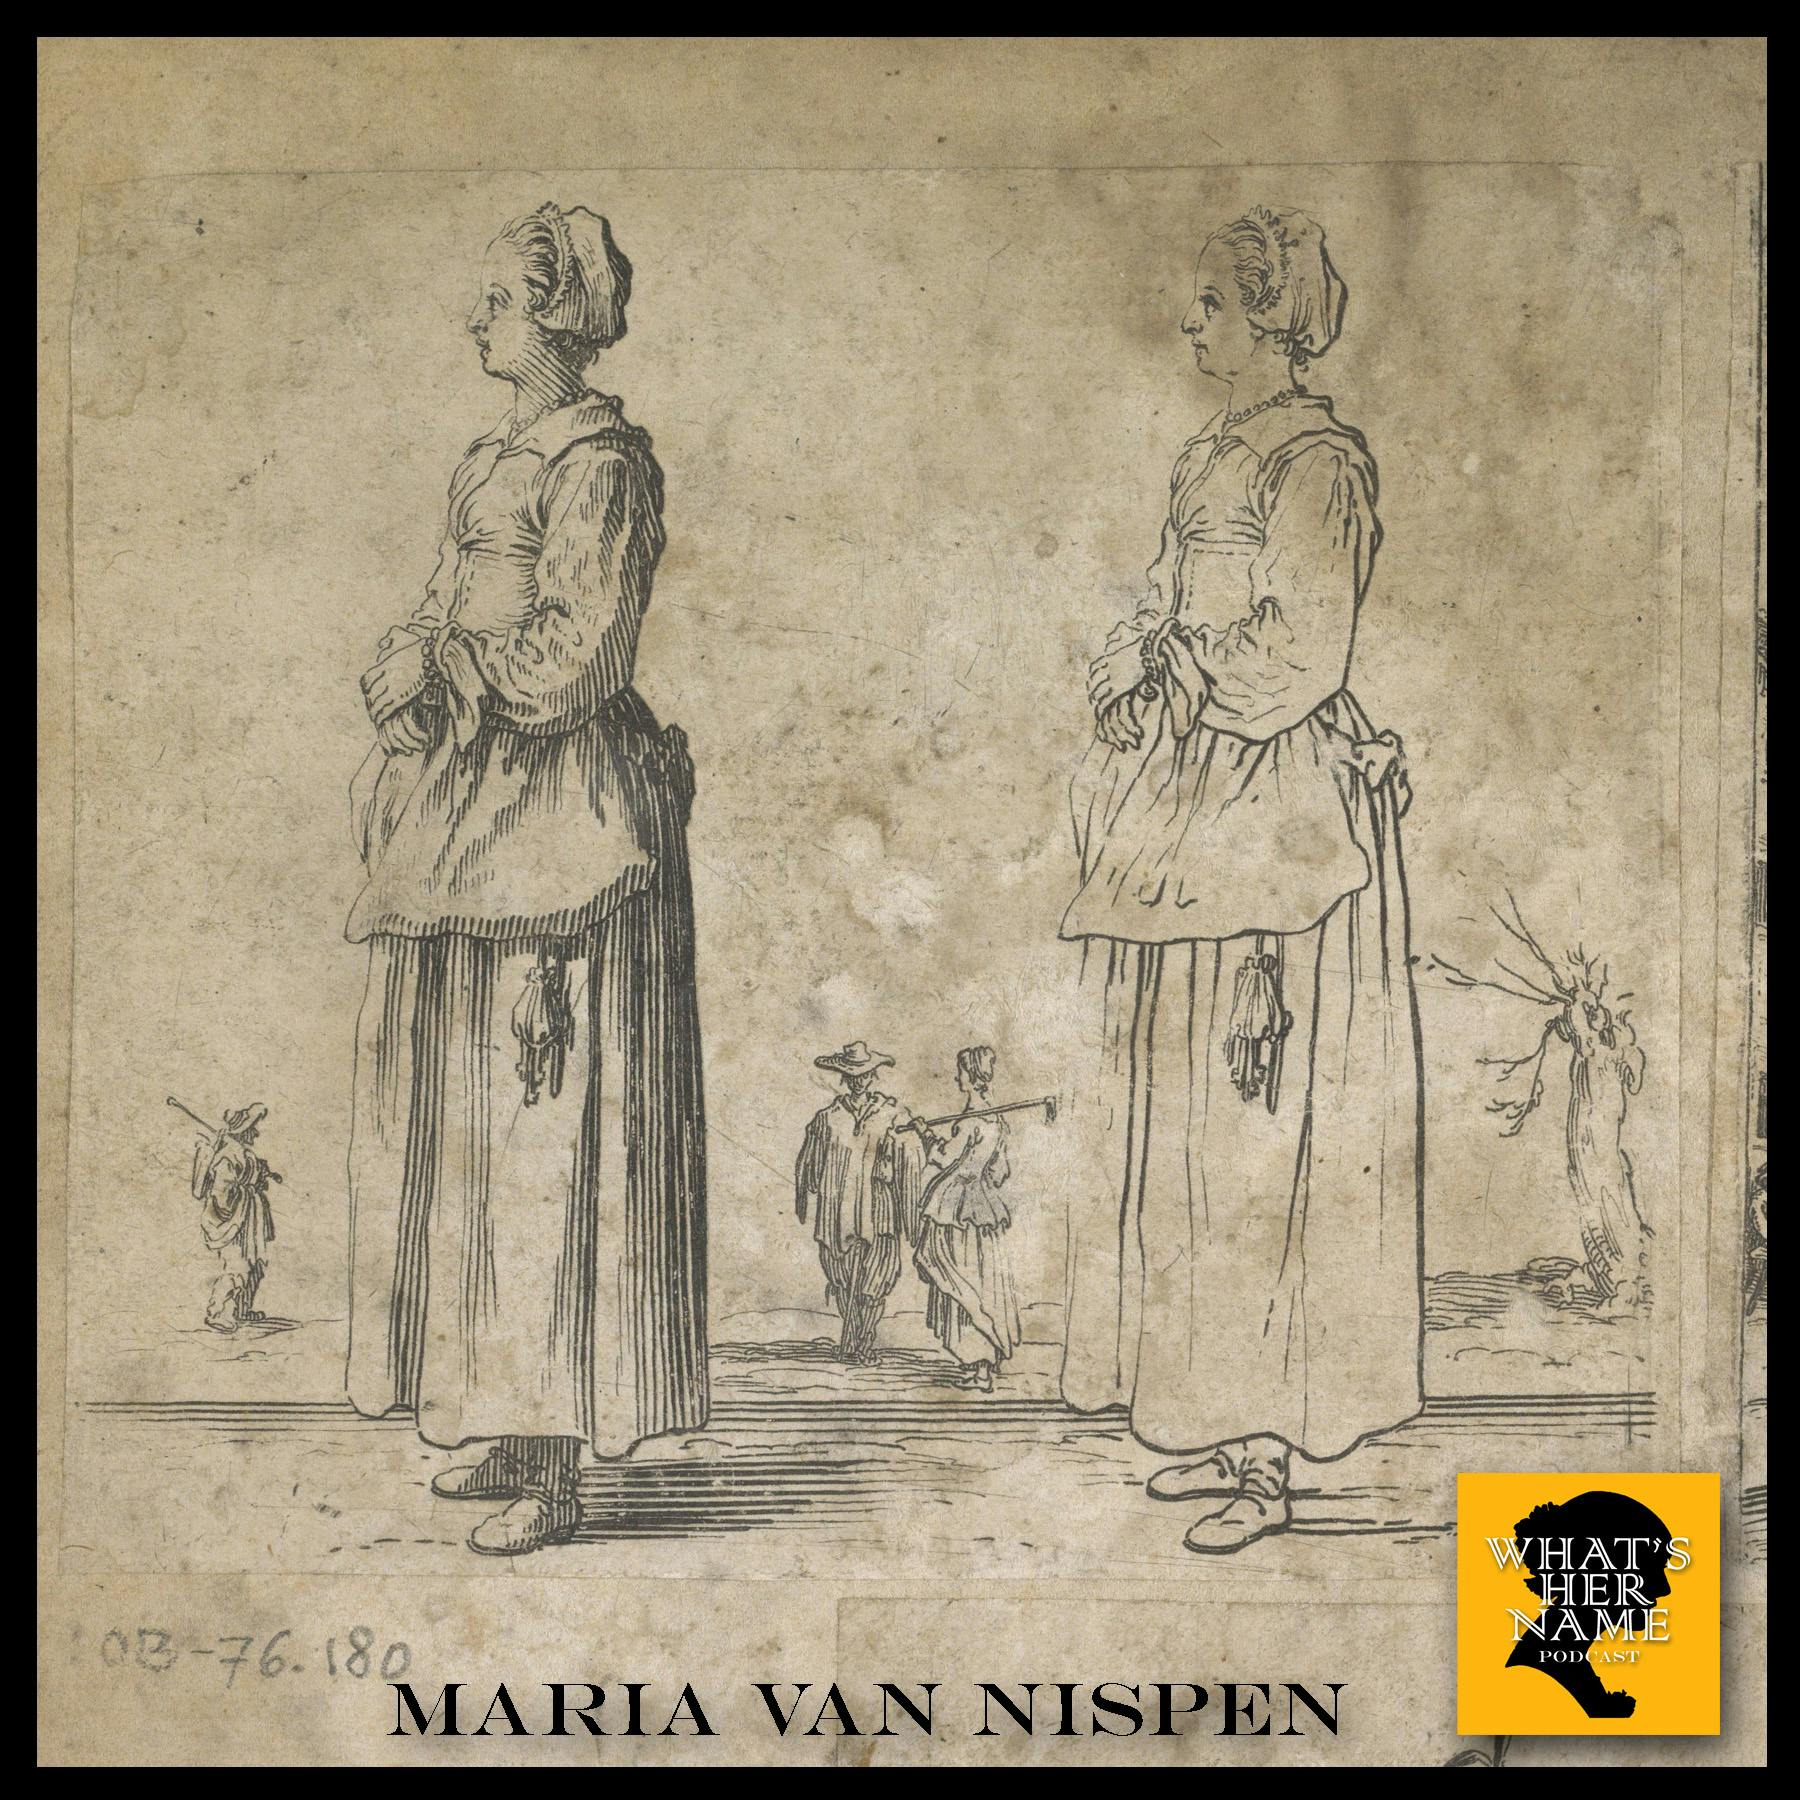 THE WARDEN Maria van Nispen